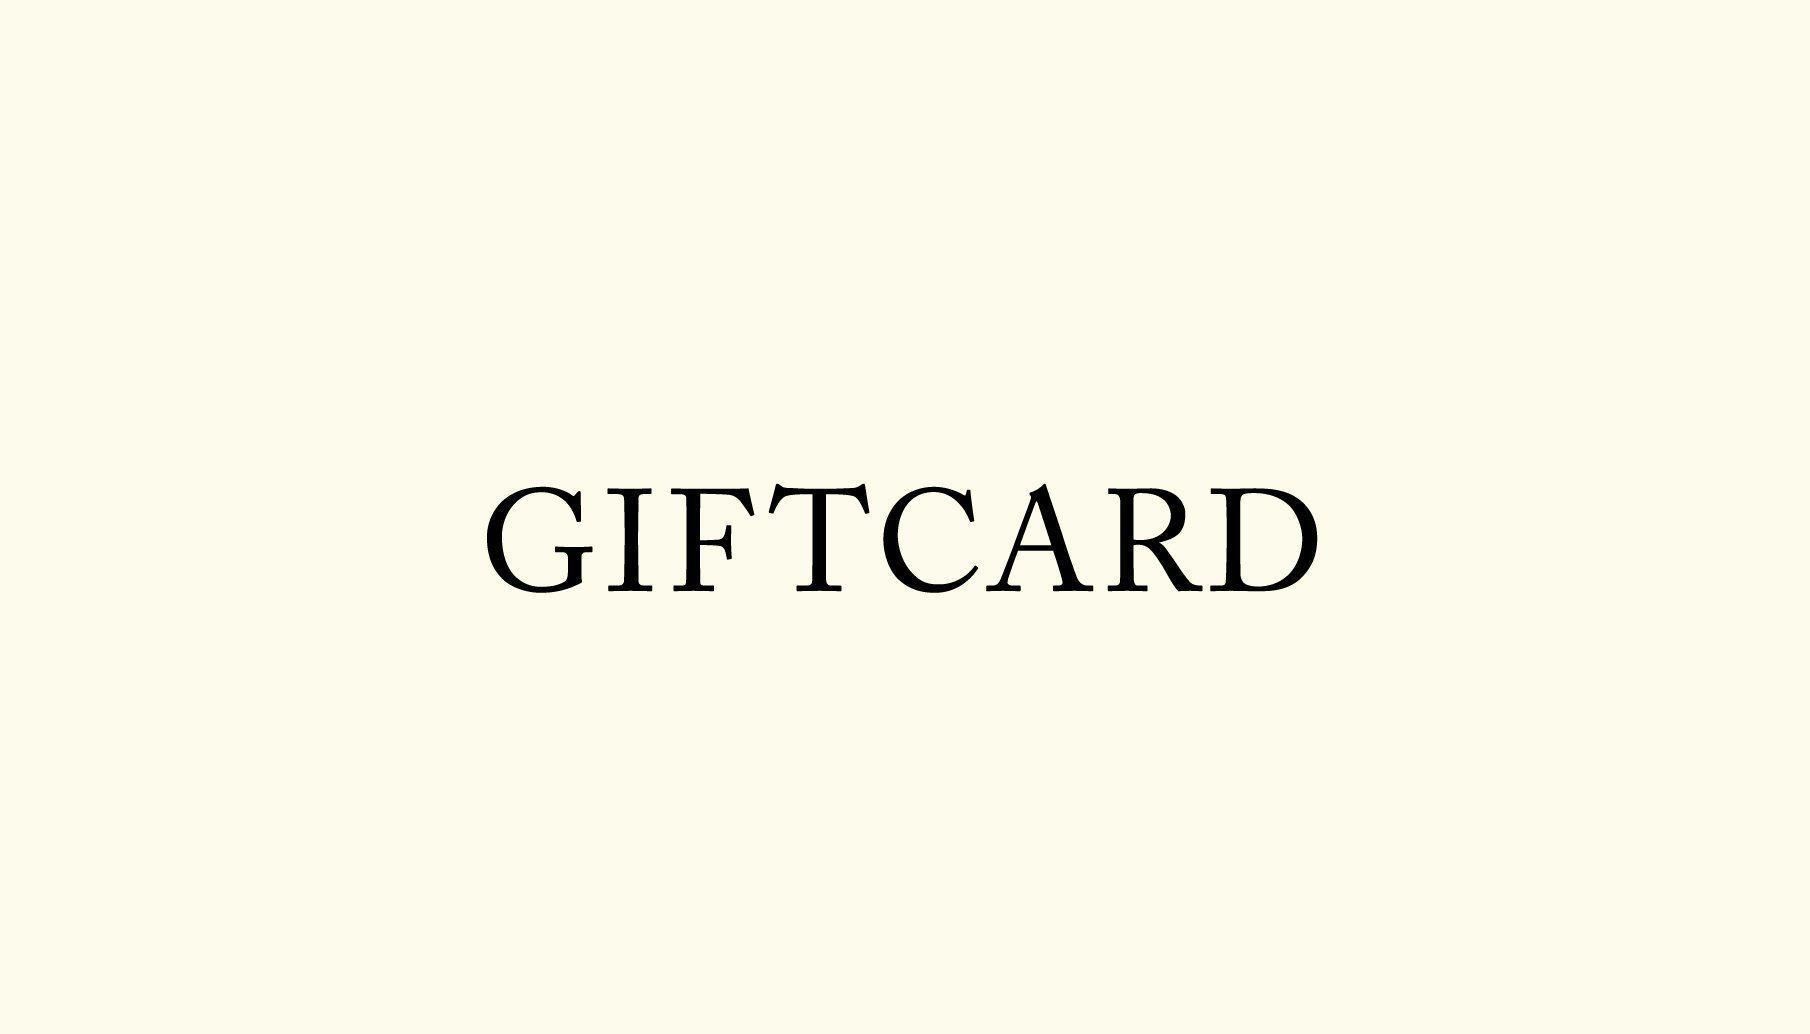 Gift Card - Gift Card - $25 - MEI-CHA